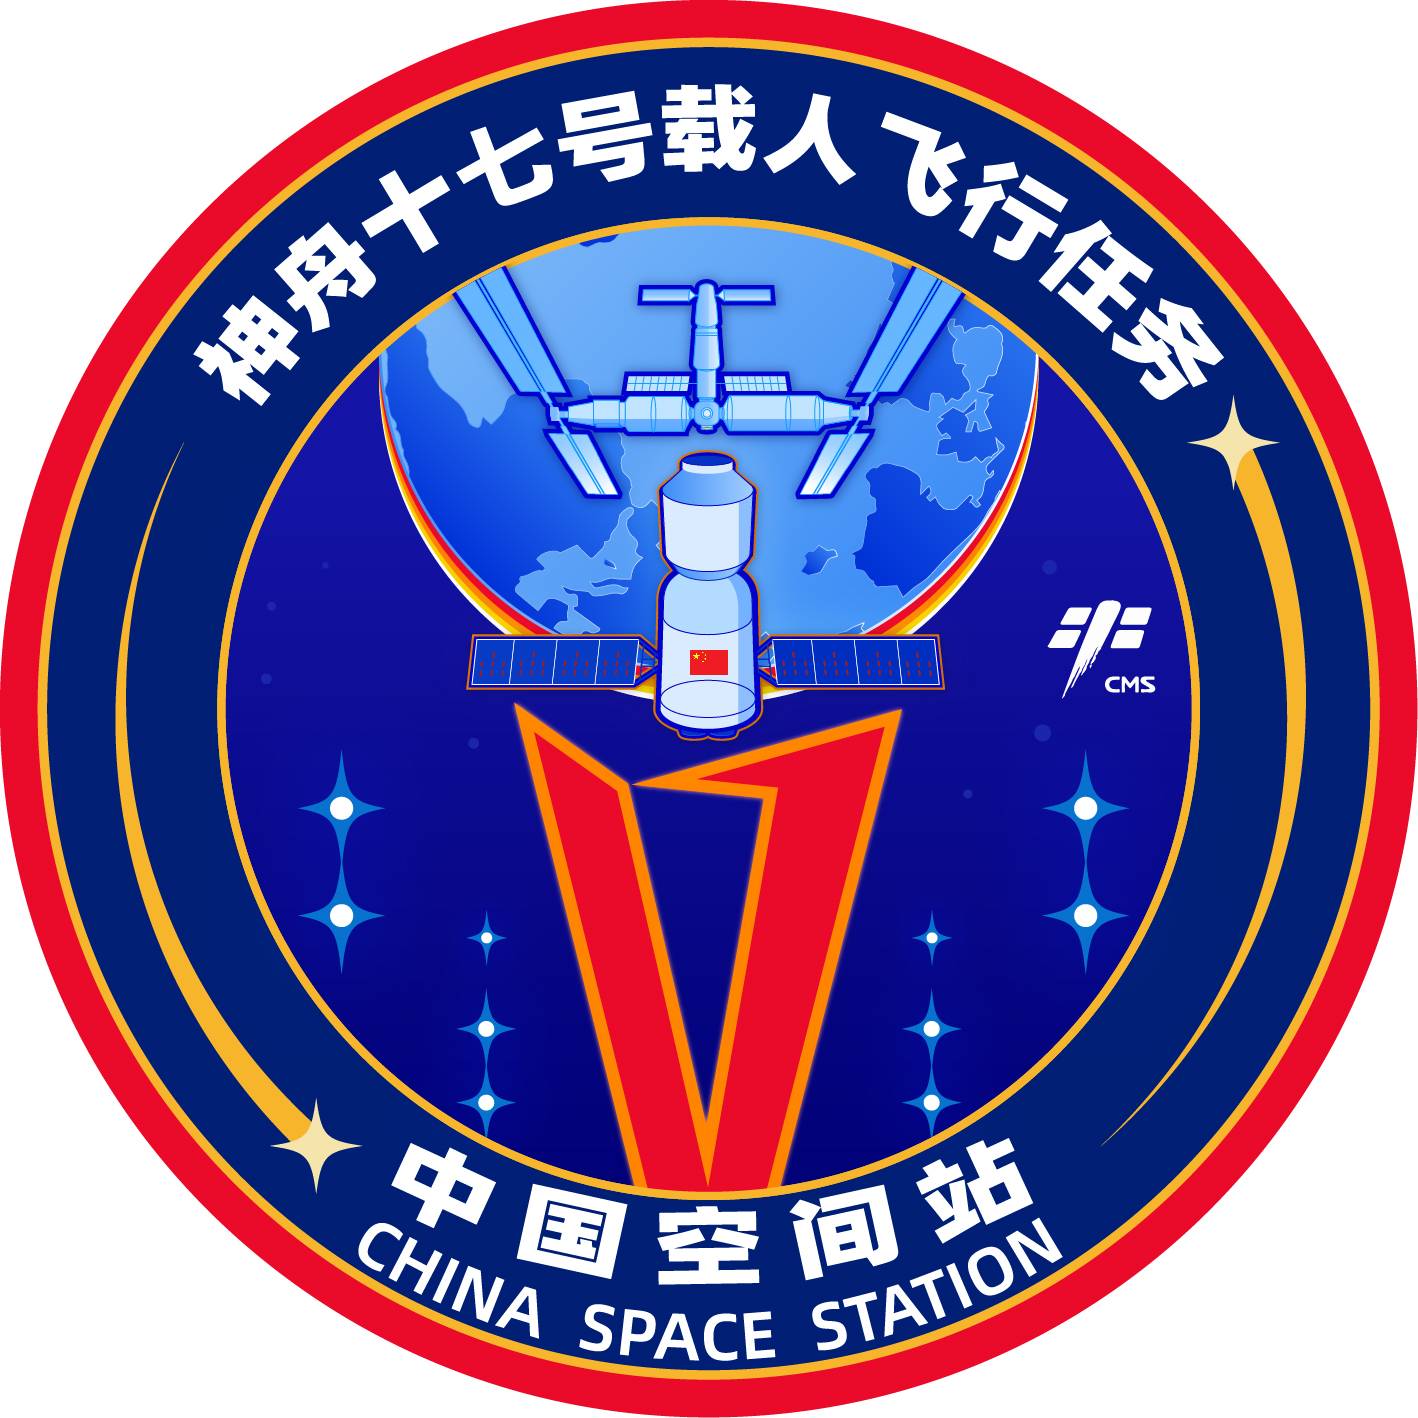 神舟十七号机组成功在天宫空间站外维修太阳能电池板 – Best英语新闻网